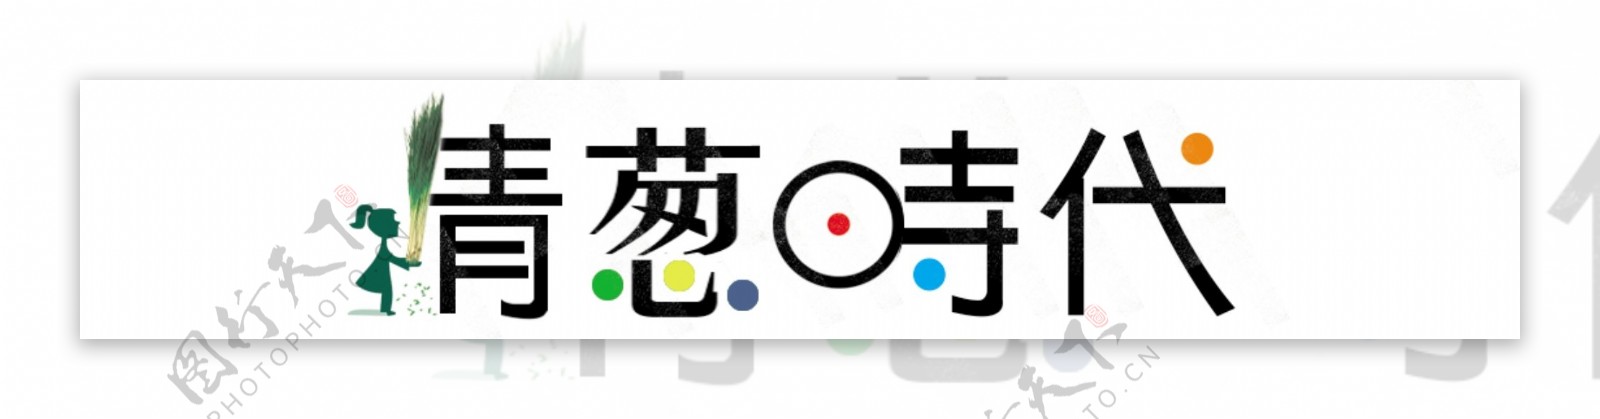 青葱时代logo